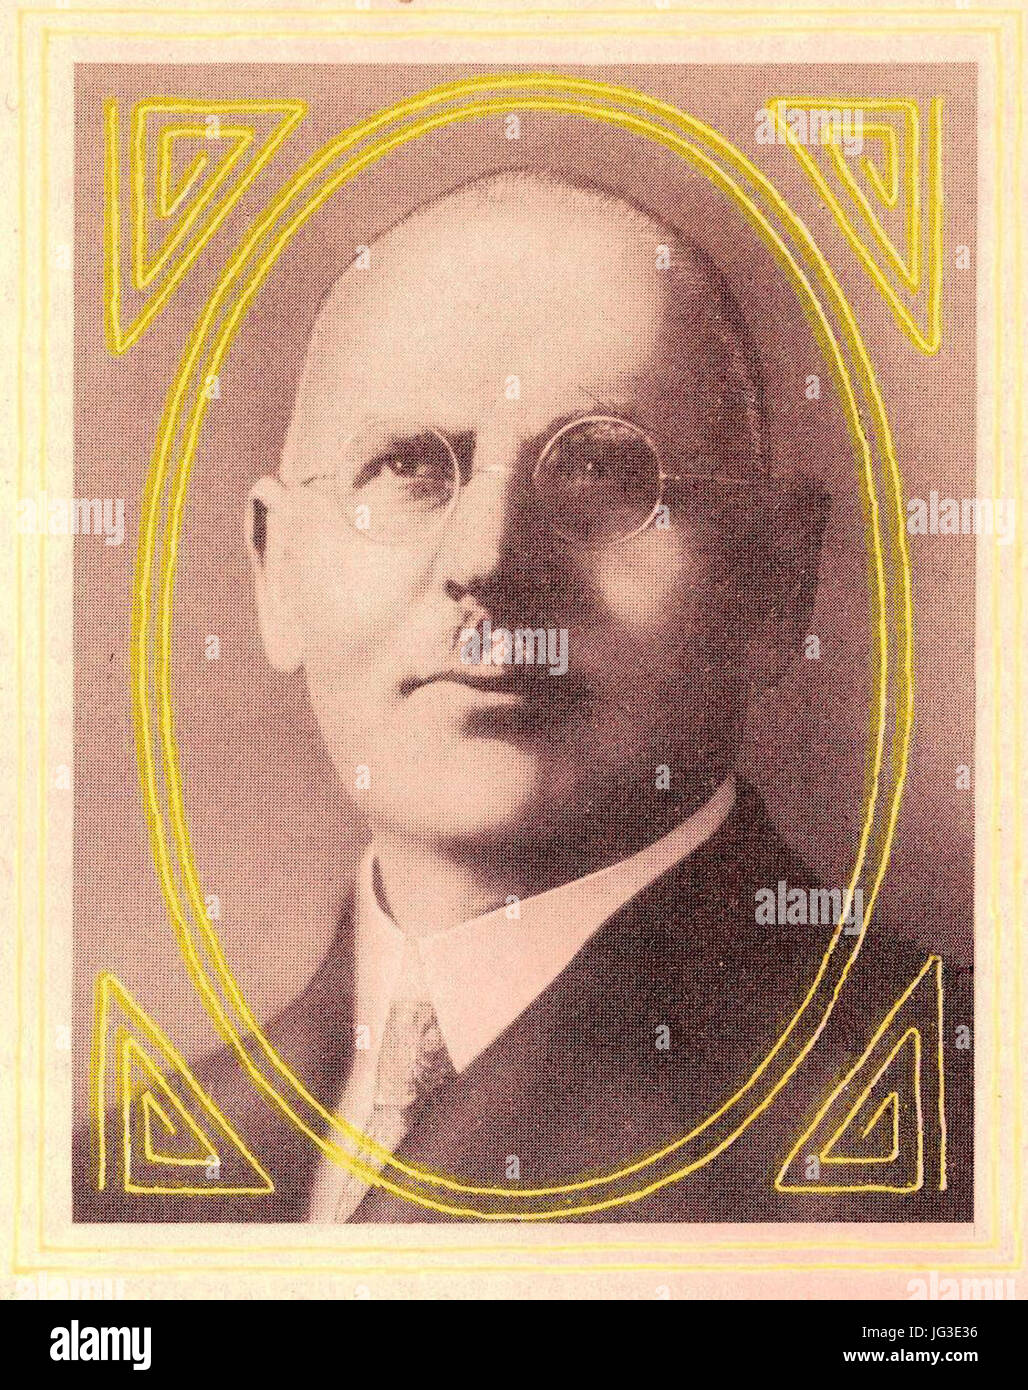 Heinrich De Fries, Gründer der Heinrich de Fries G.m.b.H Hebezeugfabrik in Düsseldorf (9.Januar 1904), verstorben 1909 Stock Photo